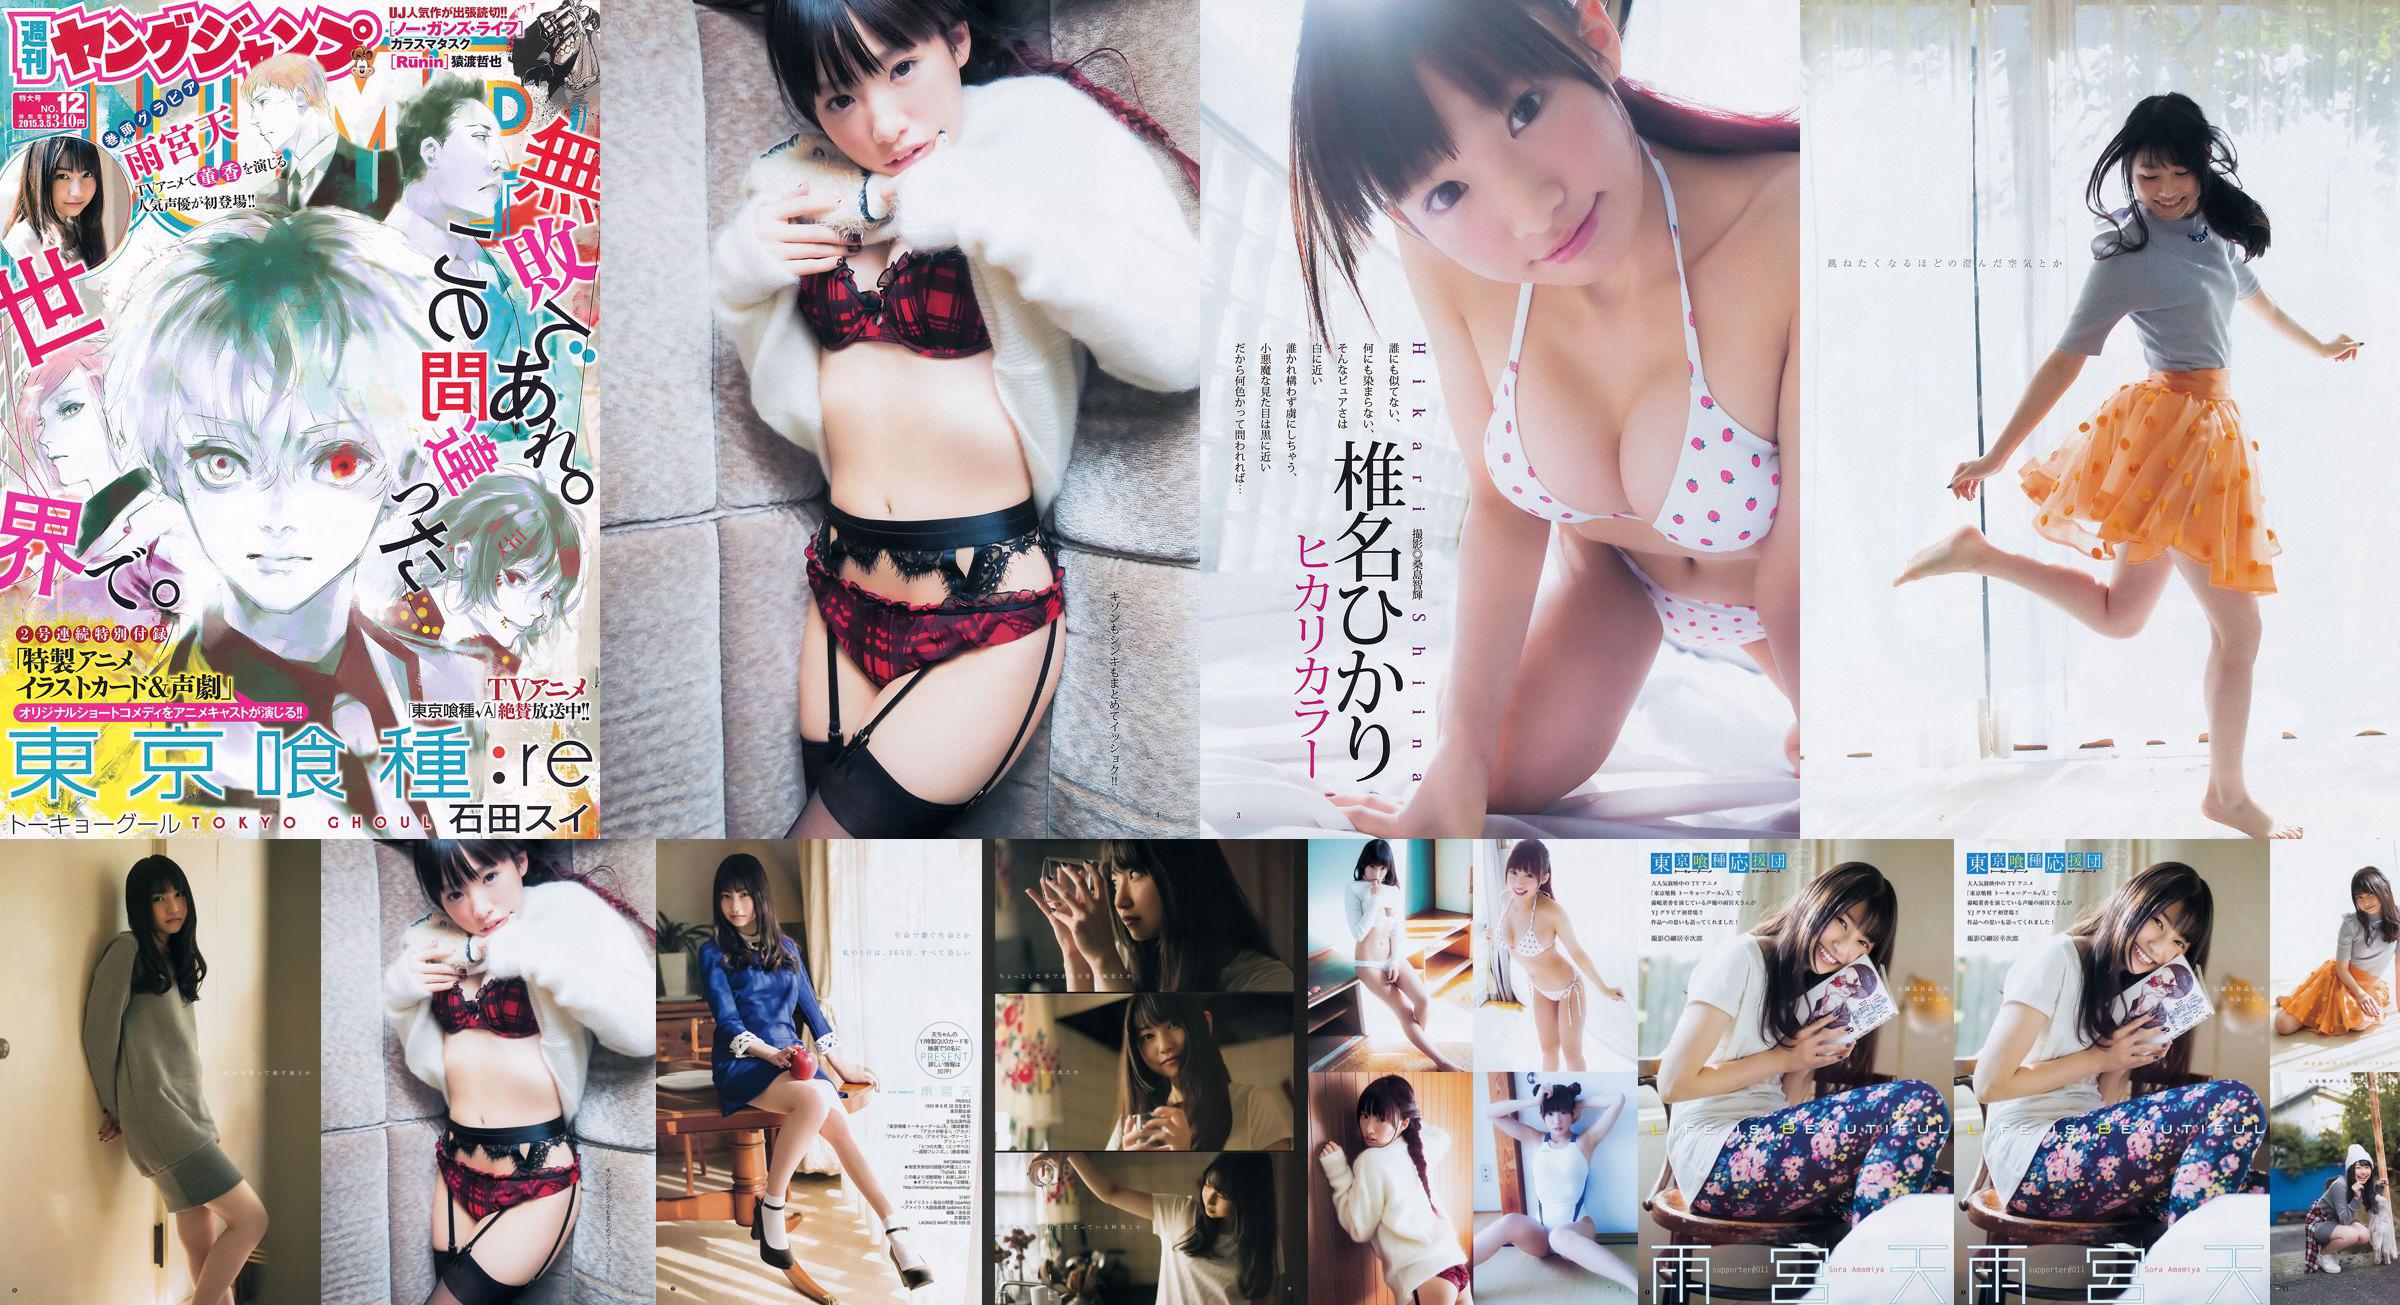 雨宮天 椎名ひかり [Weekly Young Jump] 2015年No.12 写真杂志 No.4ad973 第4页